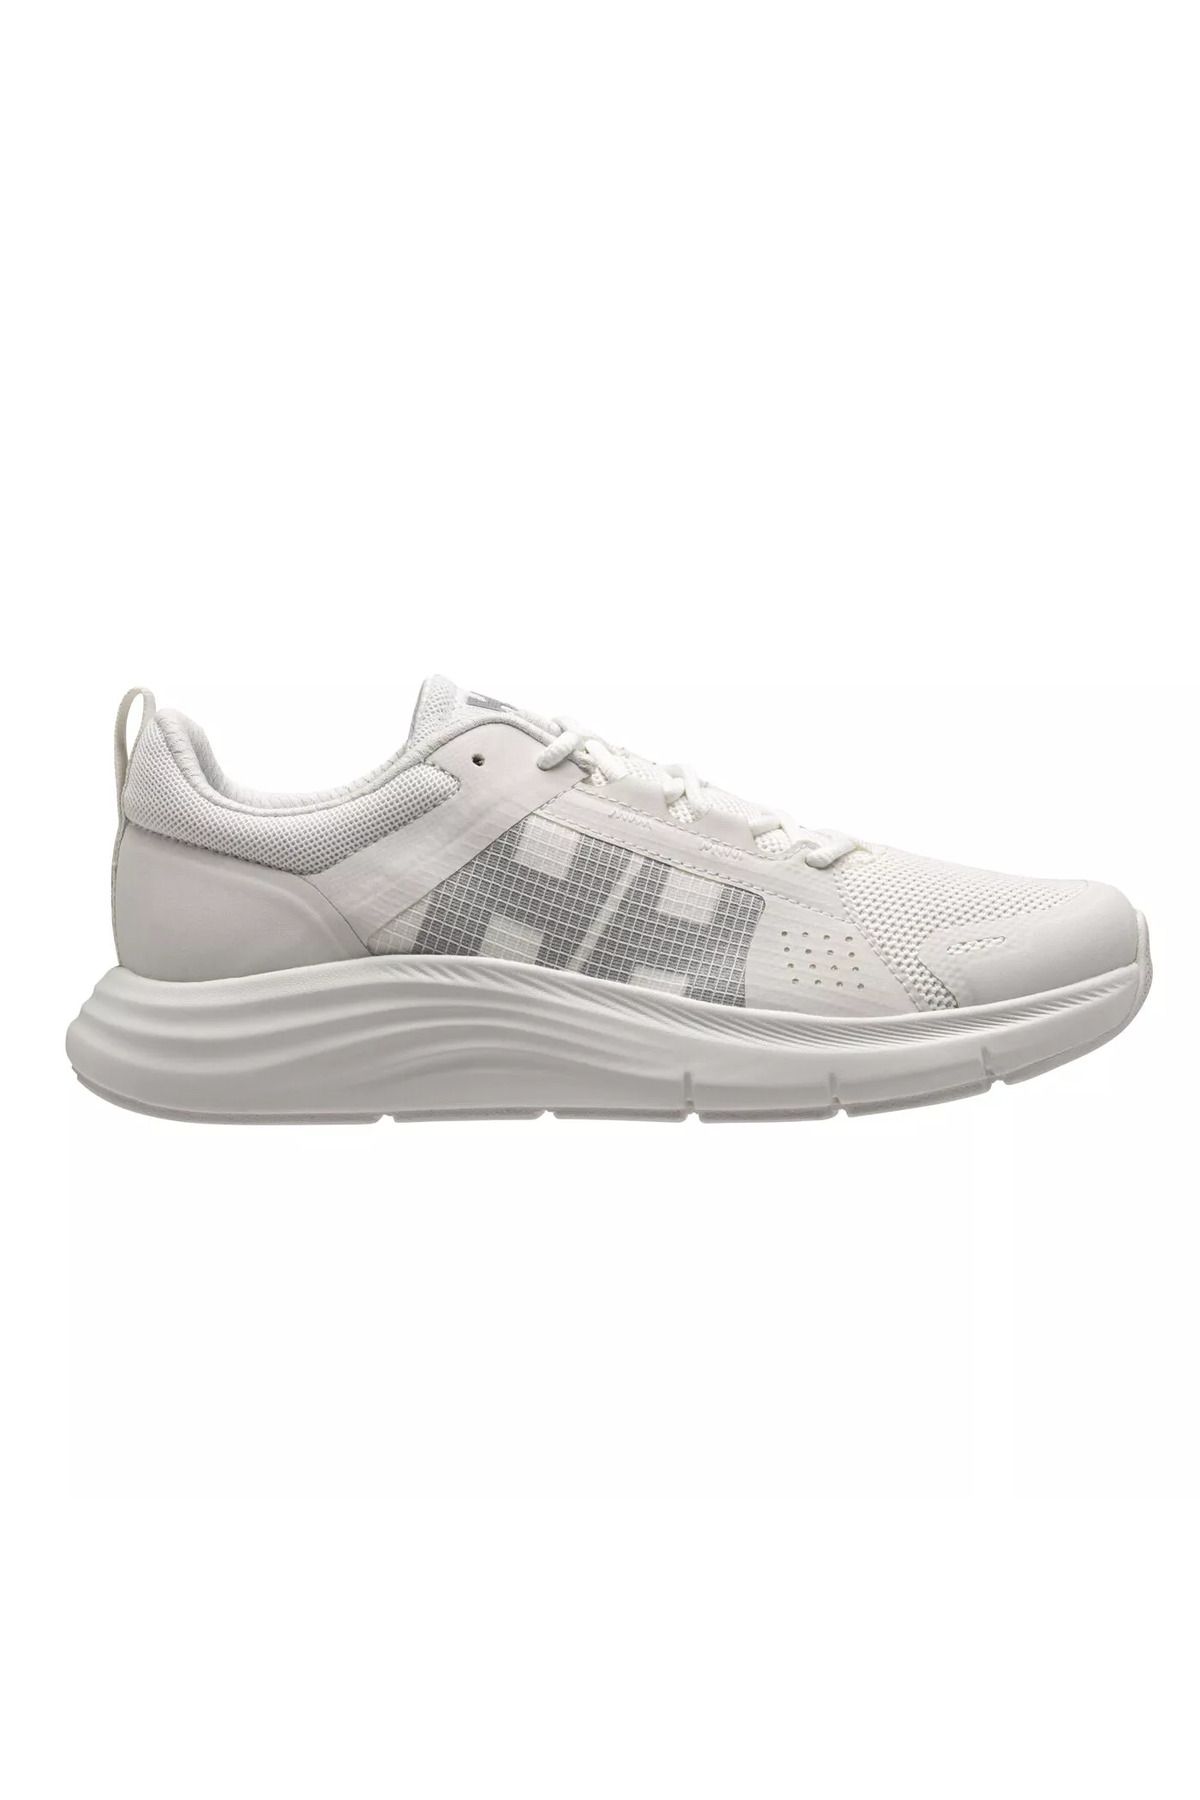 Helly Hansen Helly Hansen W Hp Ahıga Evo 5 Ayakkabı Kadın Beyaz Spor Ayakkabı Hha.11938-hha.011